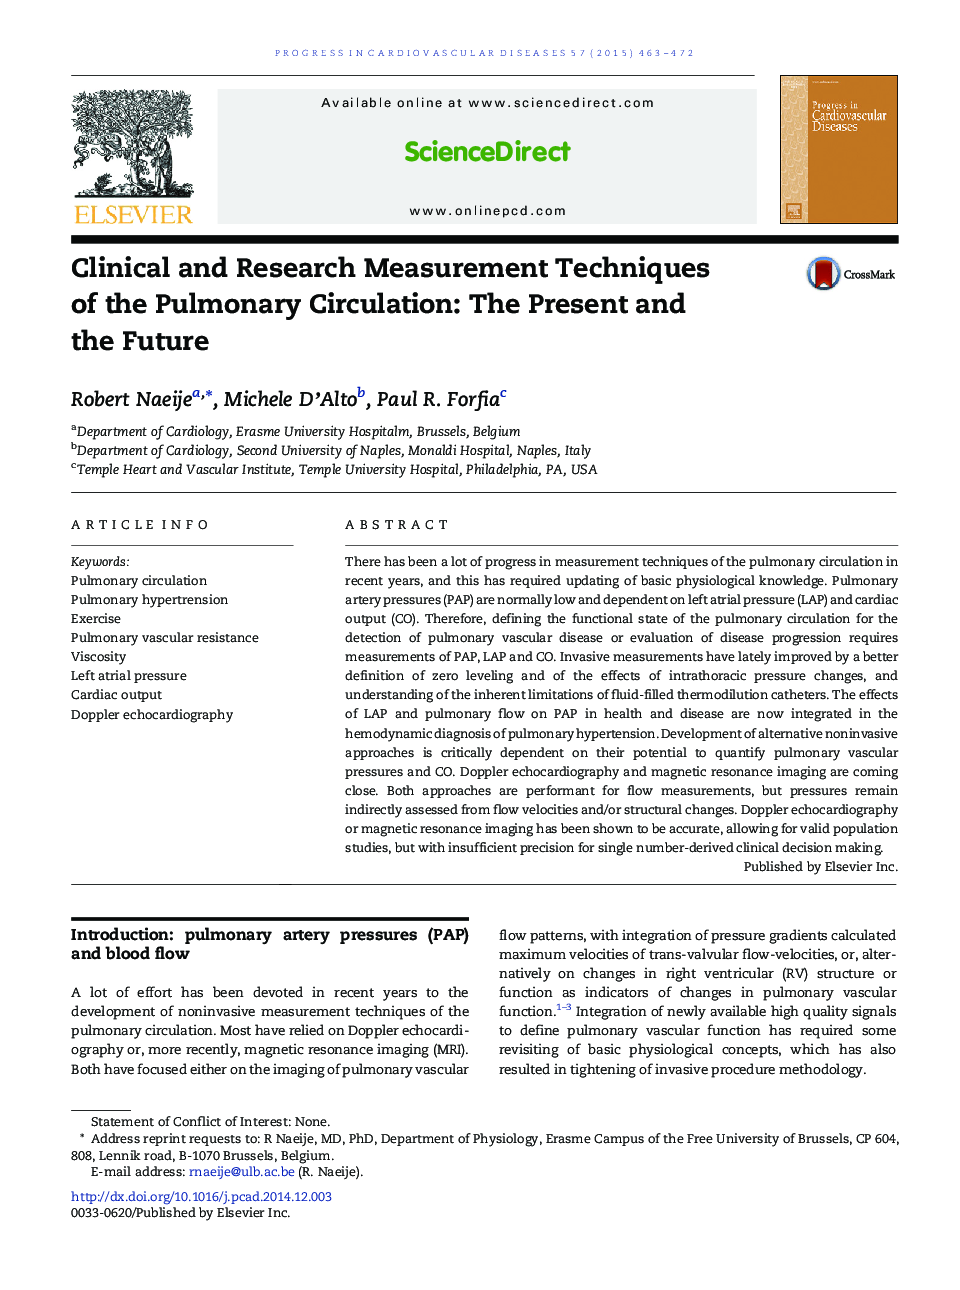 تکنیک های اندازه گیری بالینی و تحقیقاتی در گردش سلولی: حال و آینده 